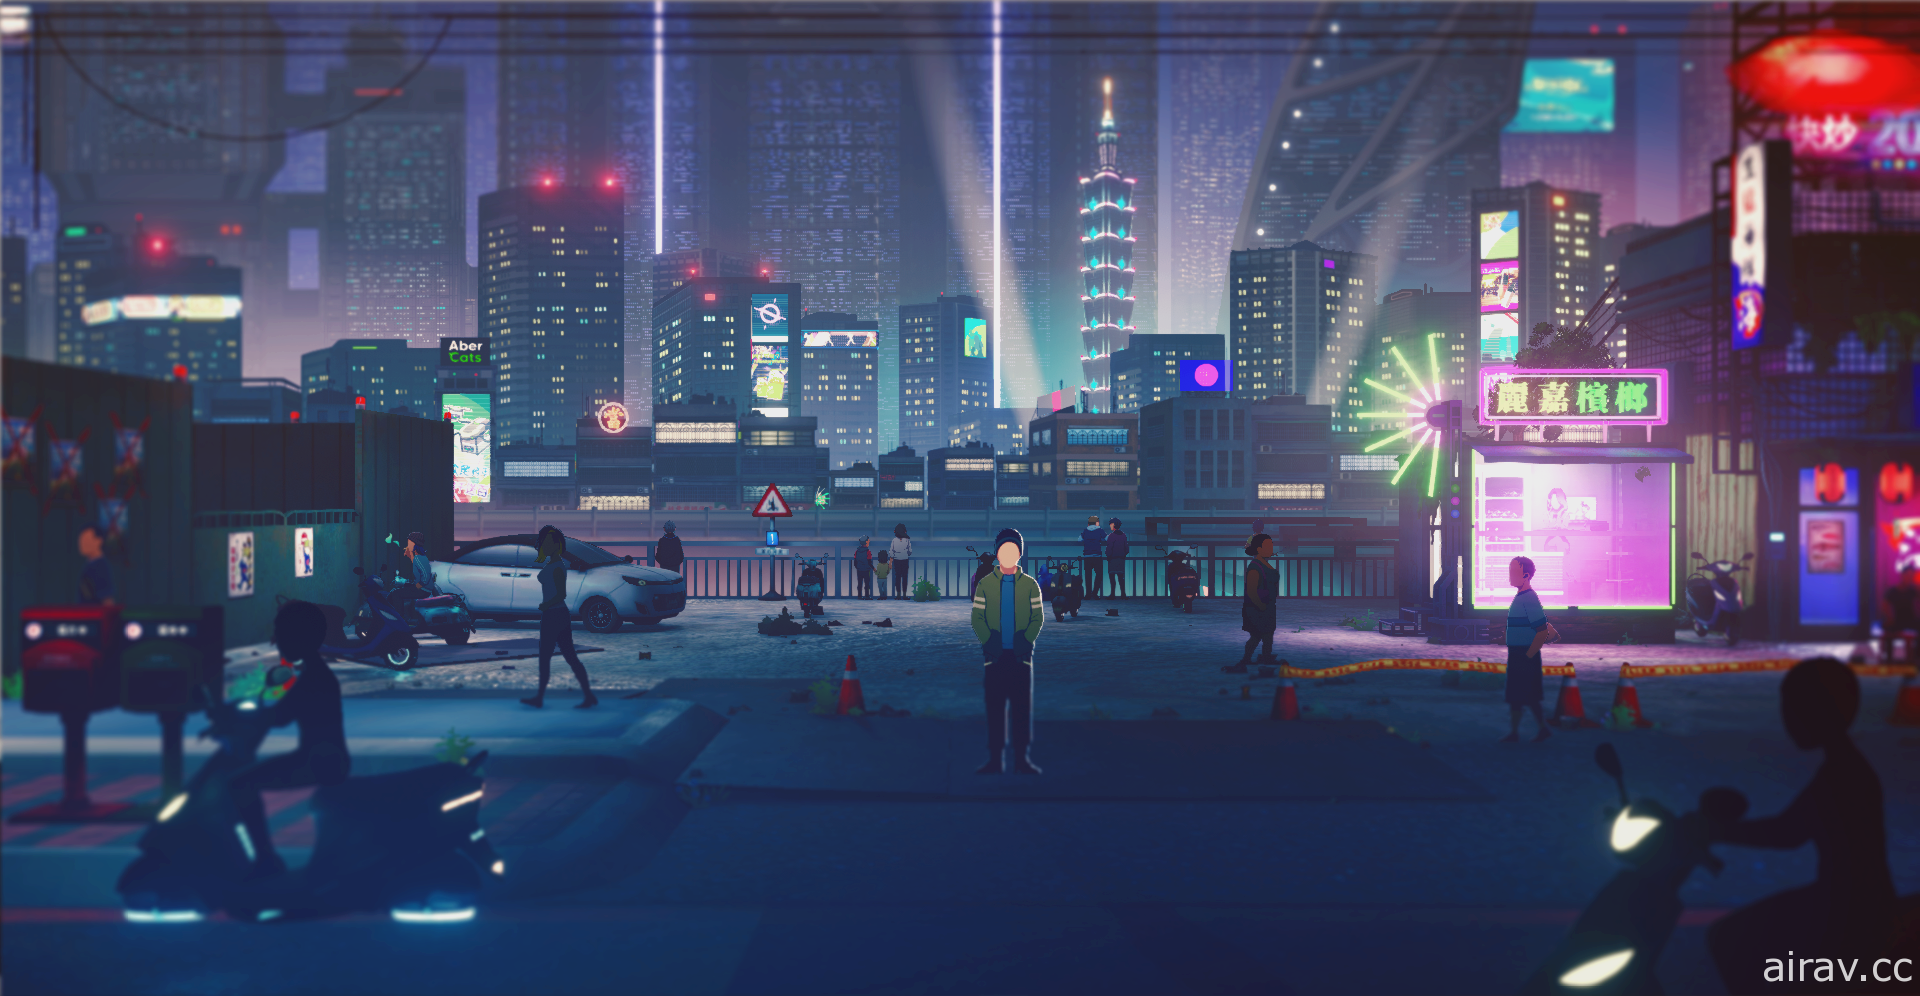 【E3 21】台湾题材 Cyberpunk 冒险游戏《沉没意志》曝光首部前导预告片